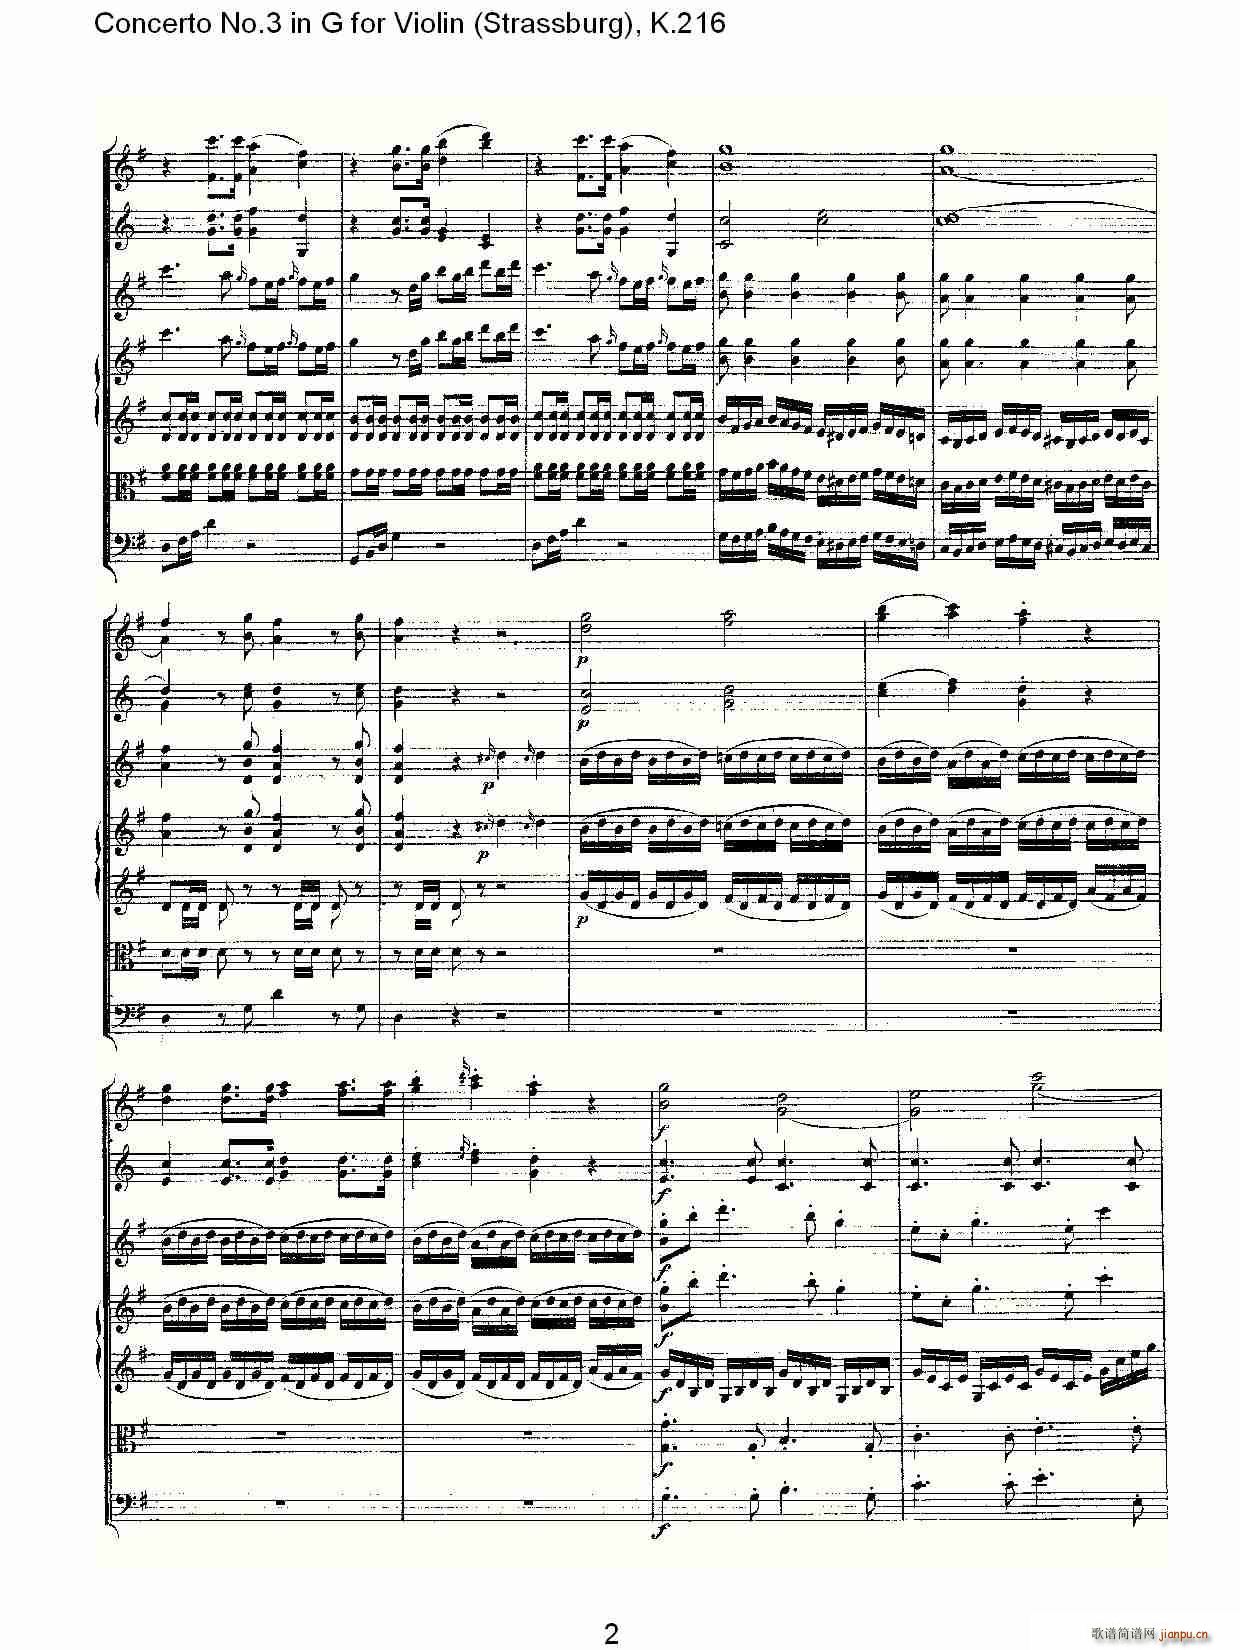 Concerto No.3 in G for Violin K.216 2